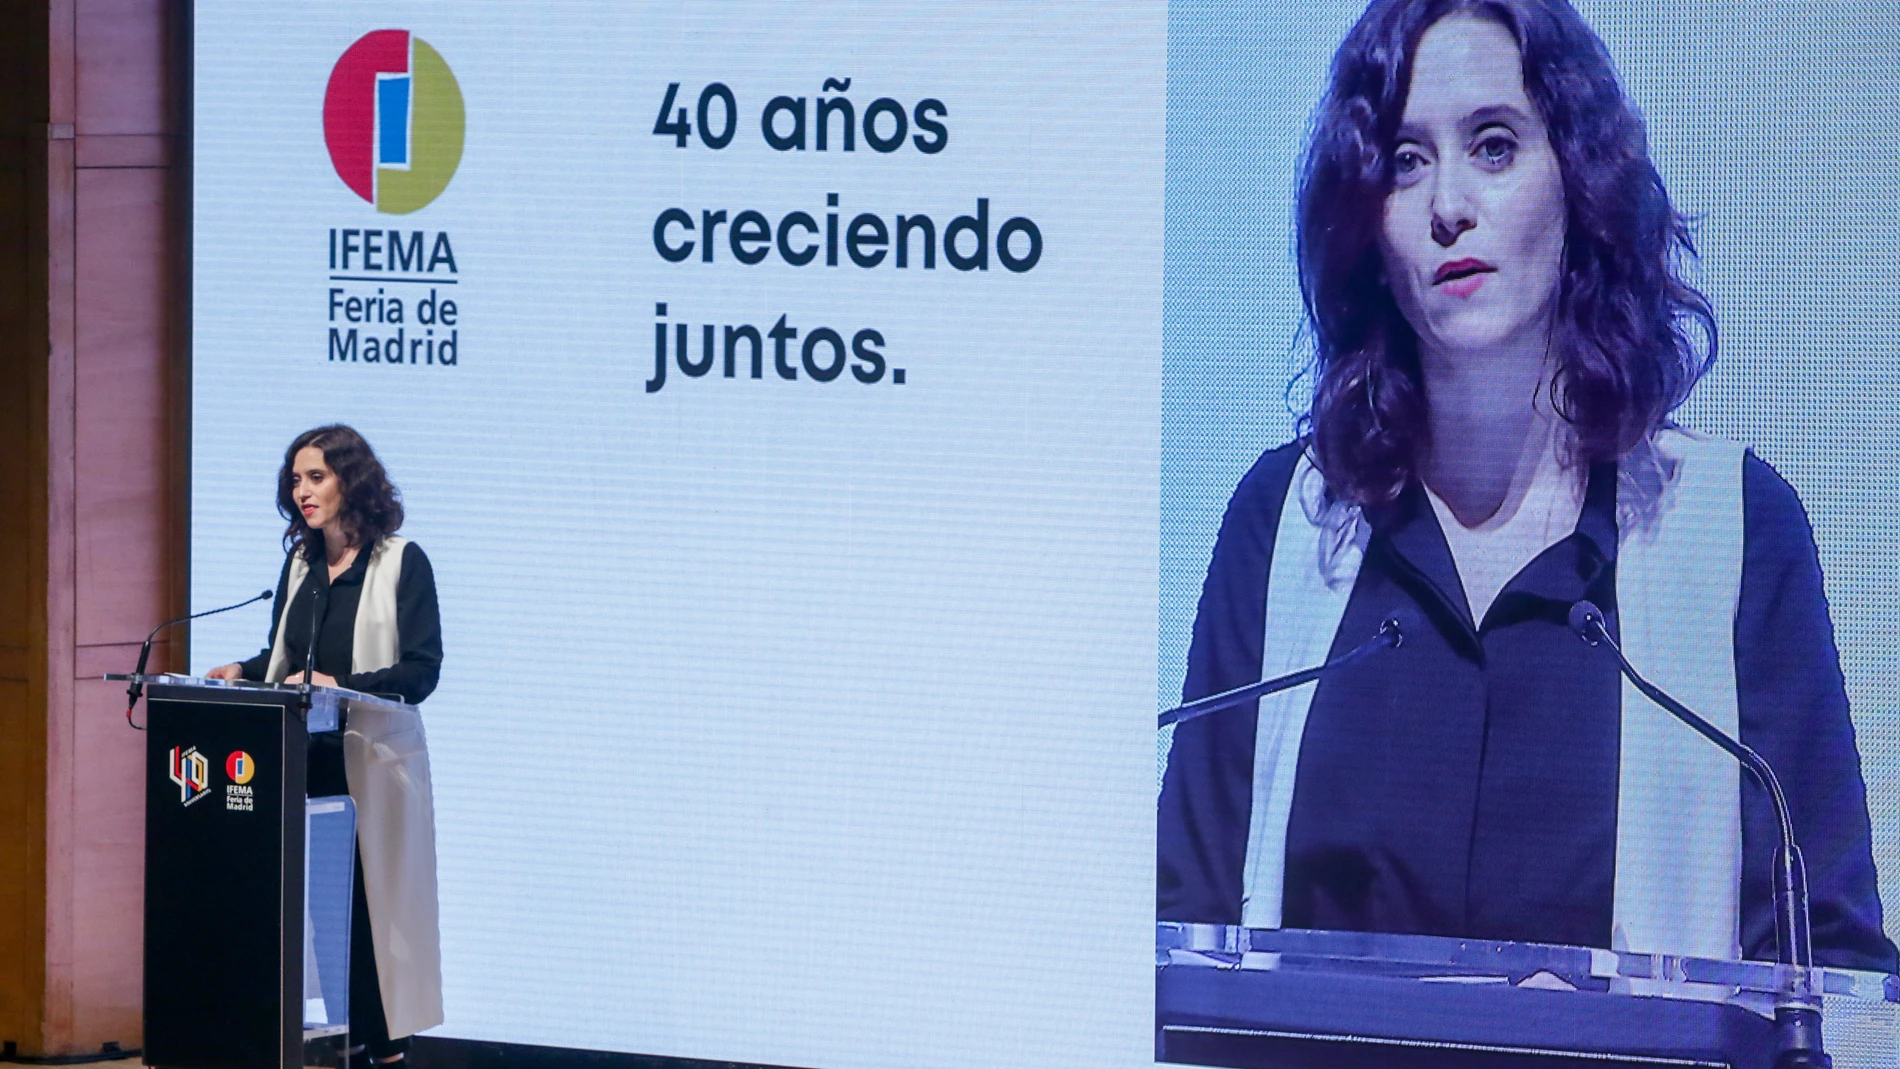 Feria de Madrid (IFEMA) celebra su 40 aniversario